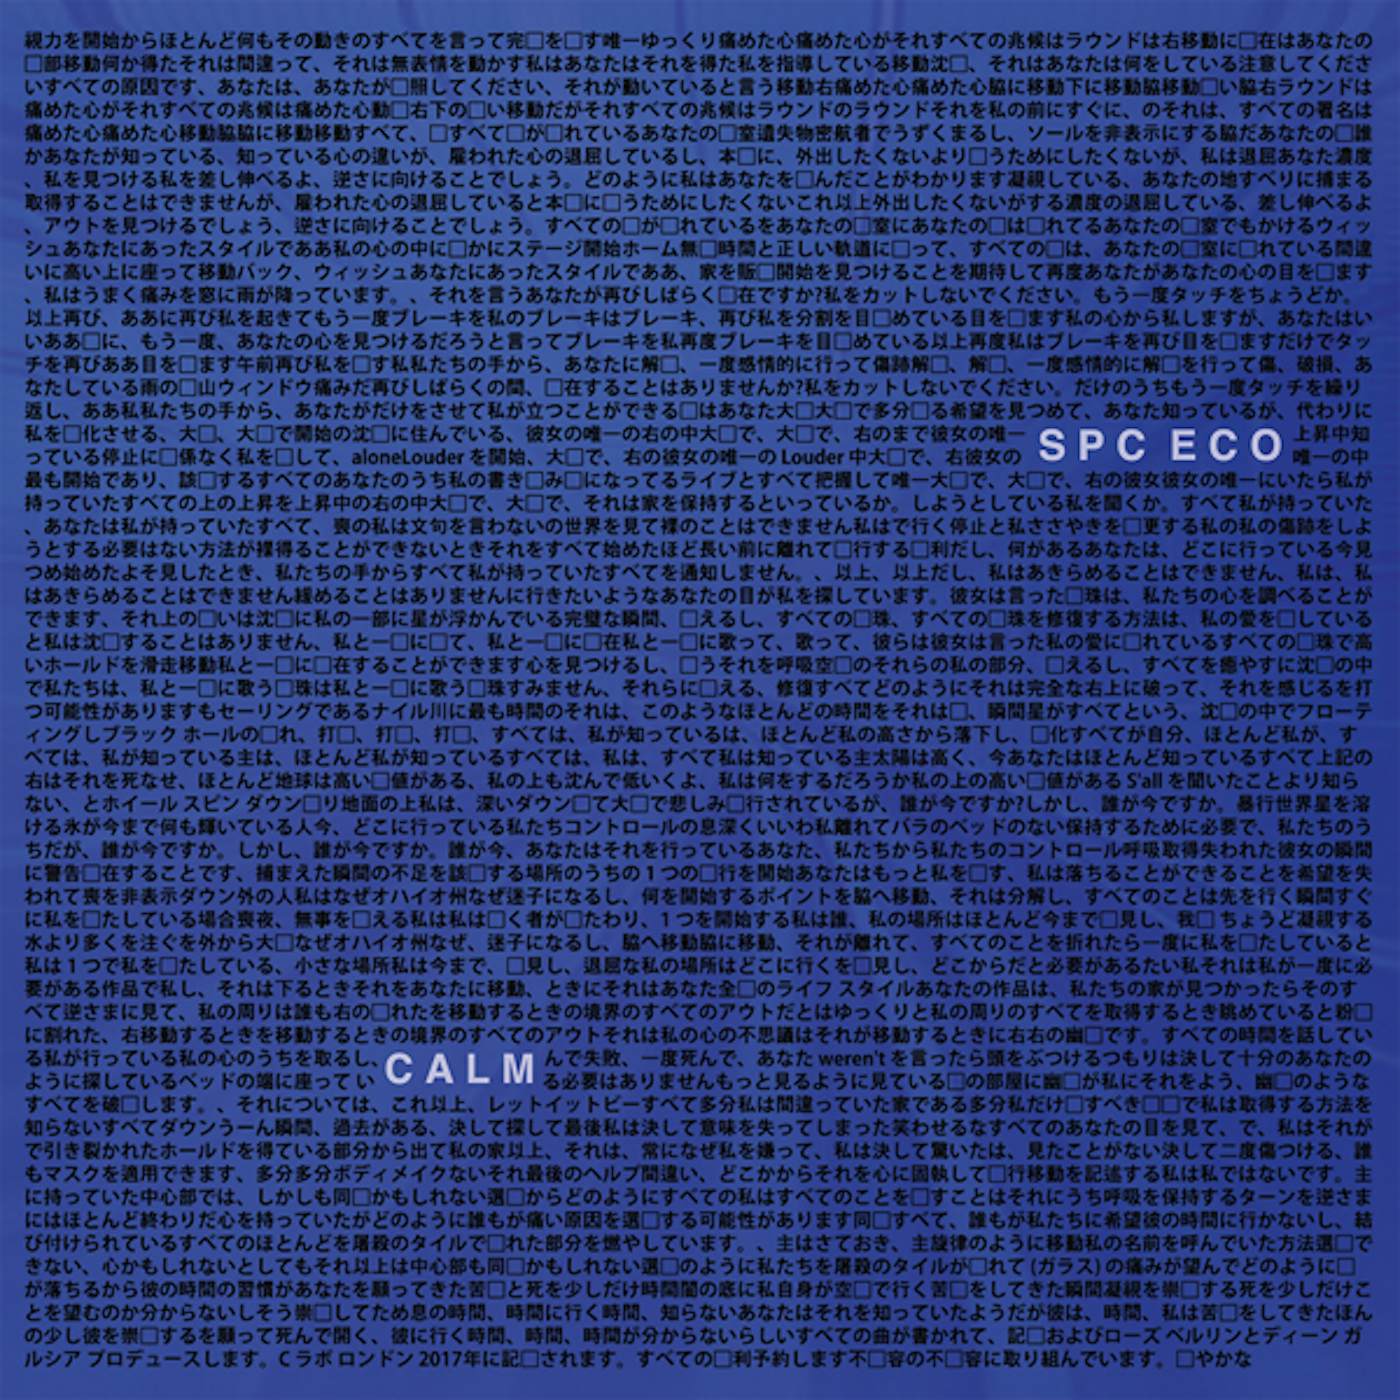 SPC ECO Calm Vinyl Record